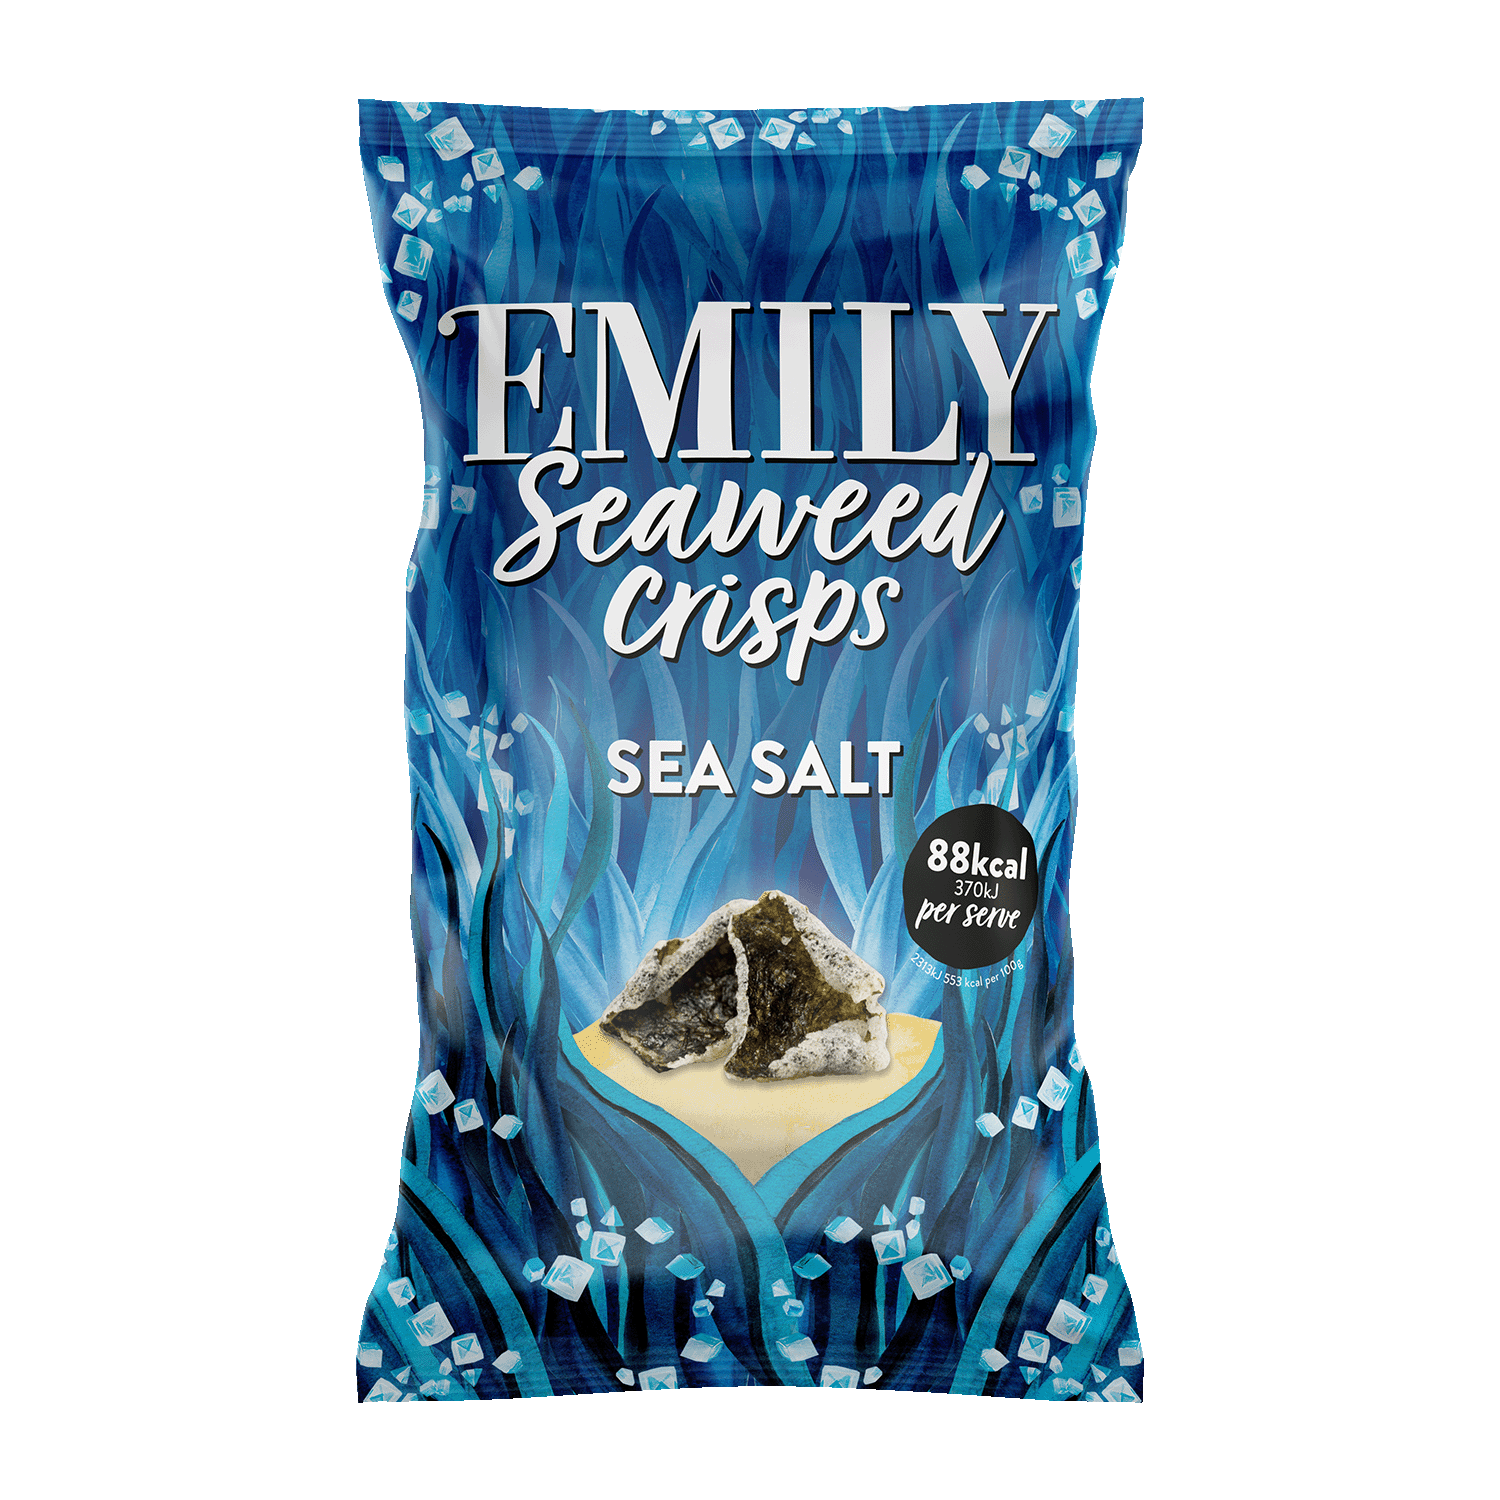 Seaweed Crisps Sea Salt, 50g